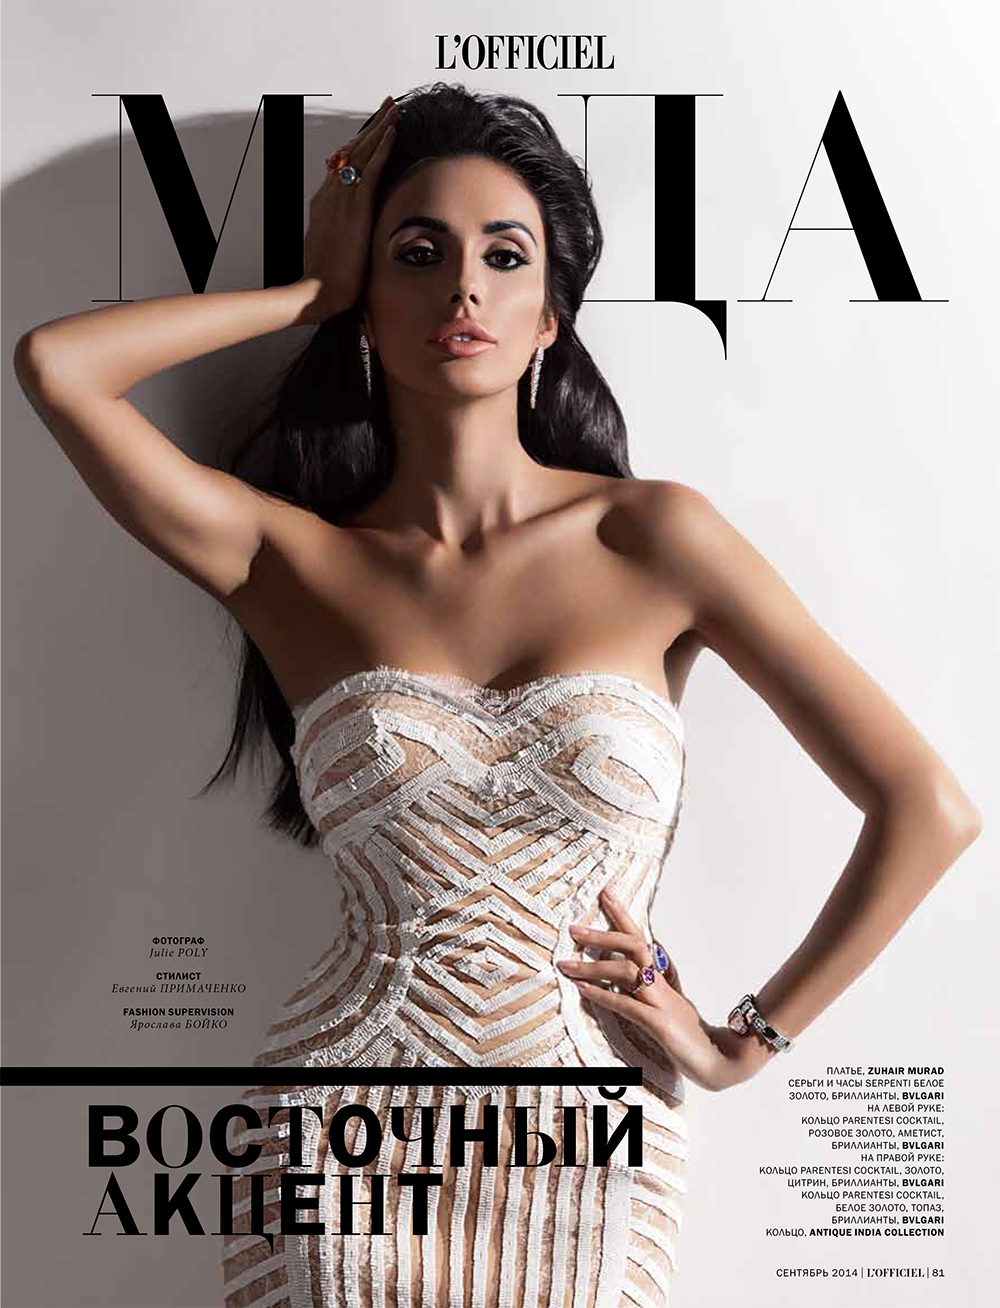 officiel officiel ukraine stephanie winger Julie Poly  fashion retouch editorial